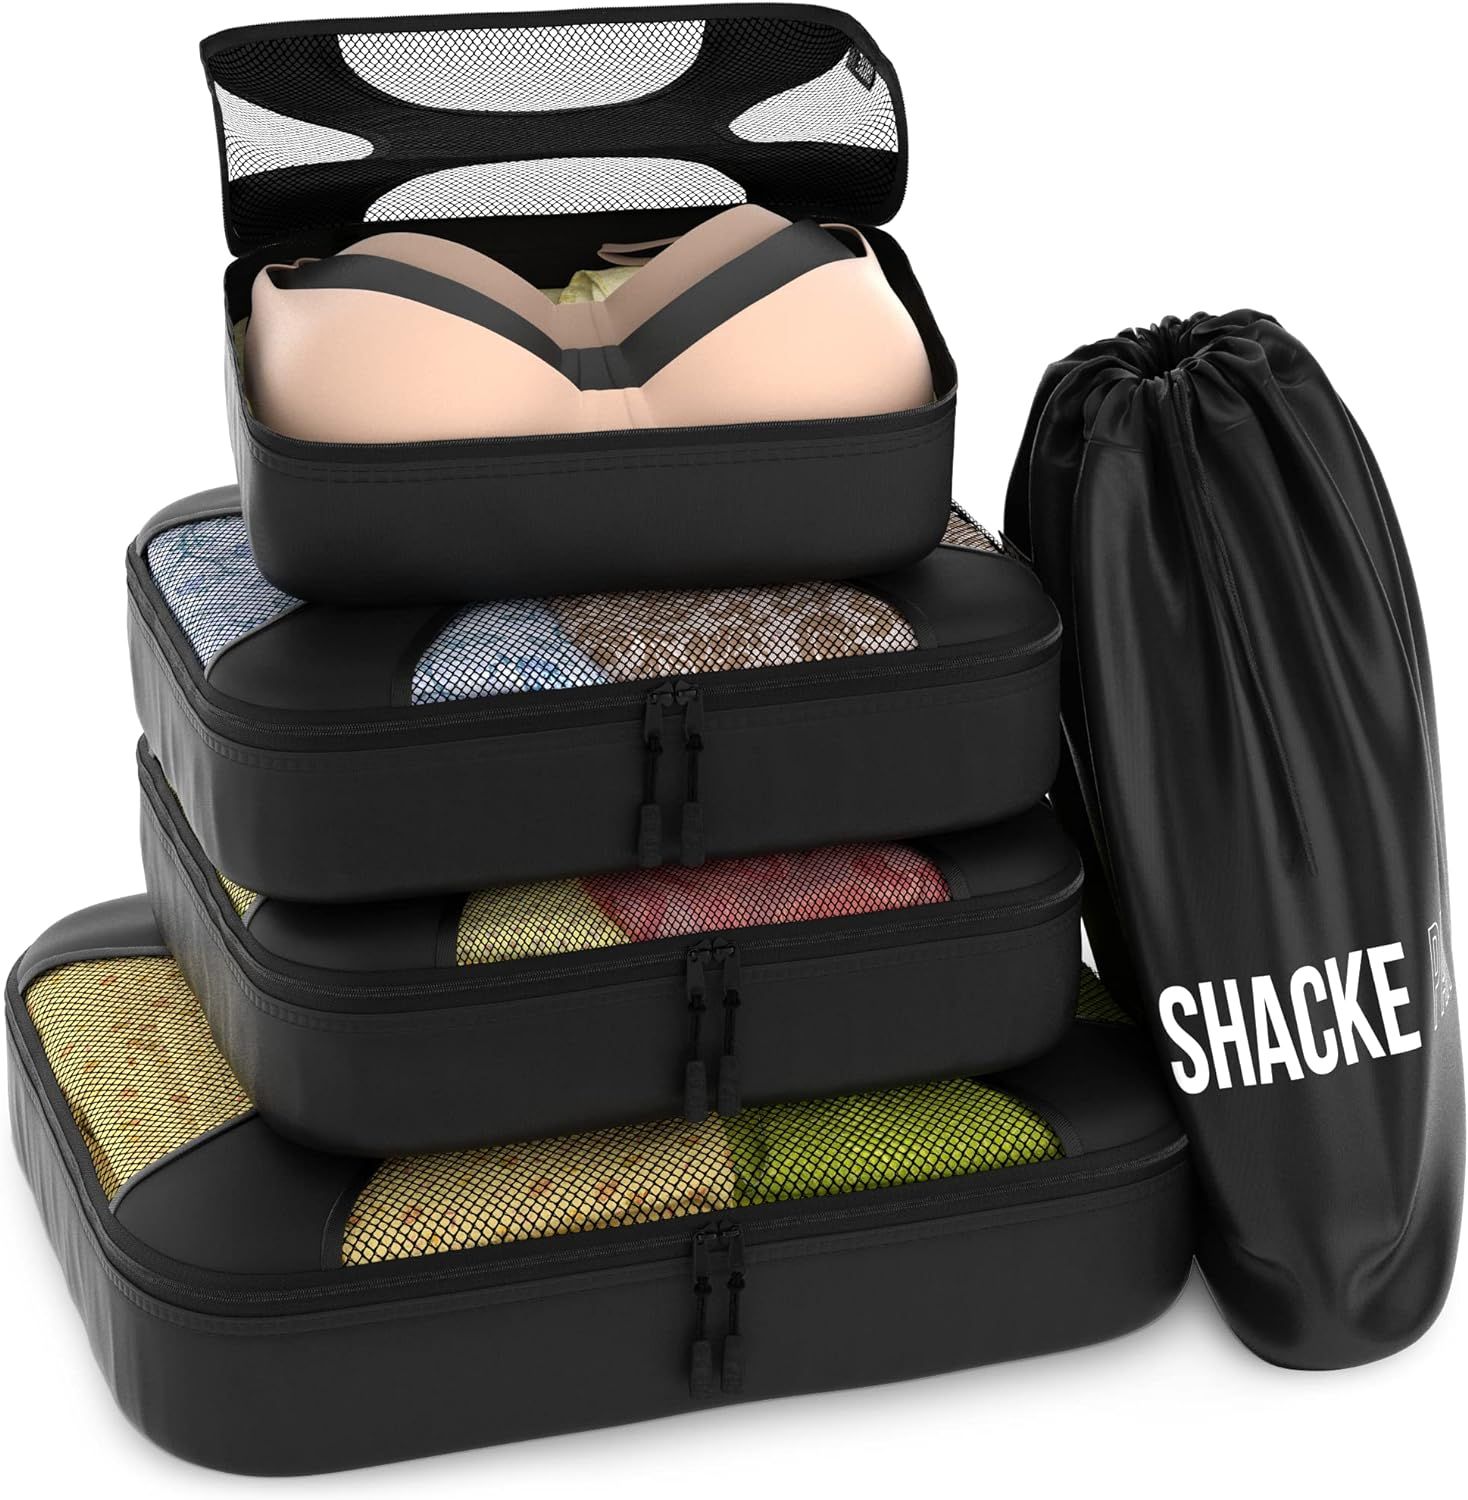 Shacke Pak - 5 Set Packing Cubes - Travel Organizers with Laundry Bag (Black) | Amazon (US)